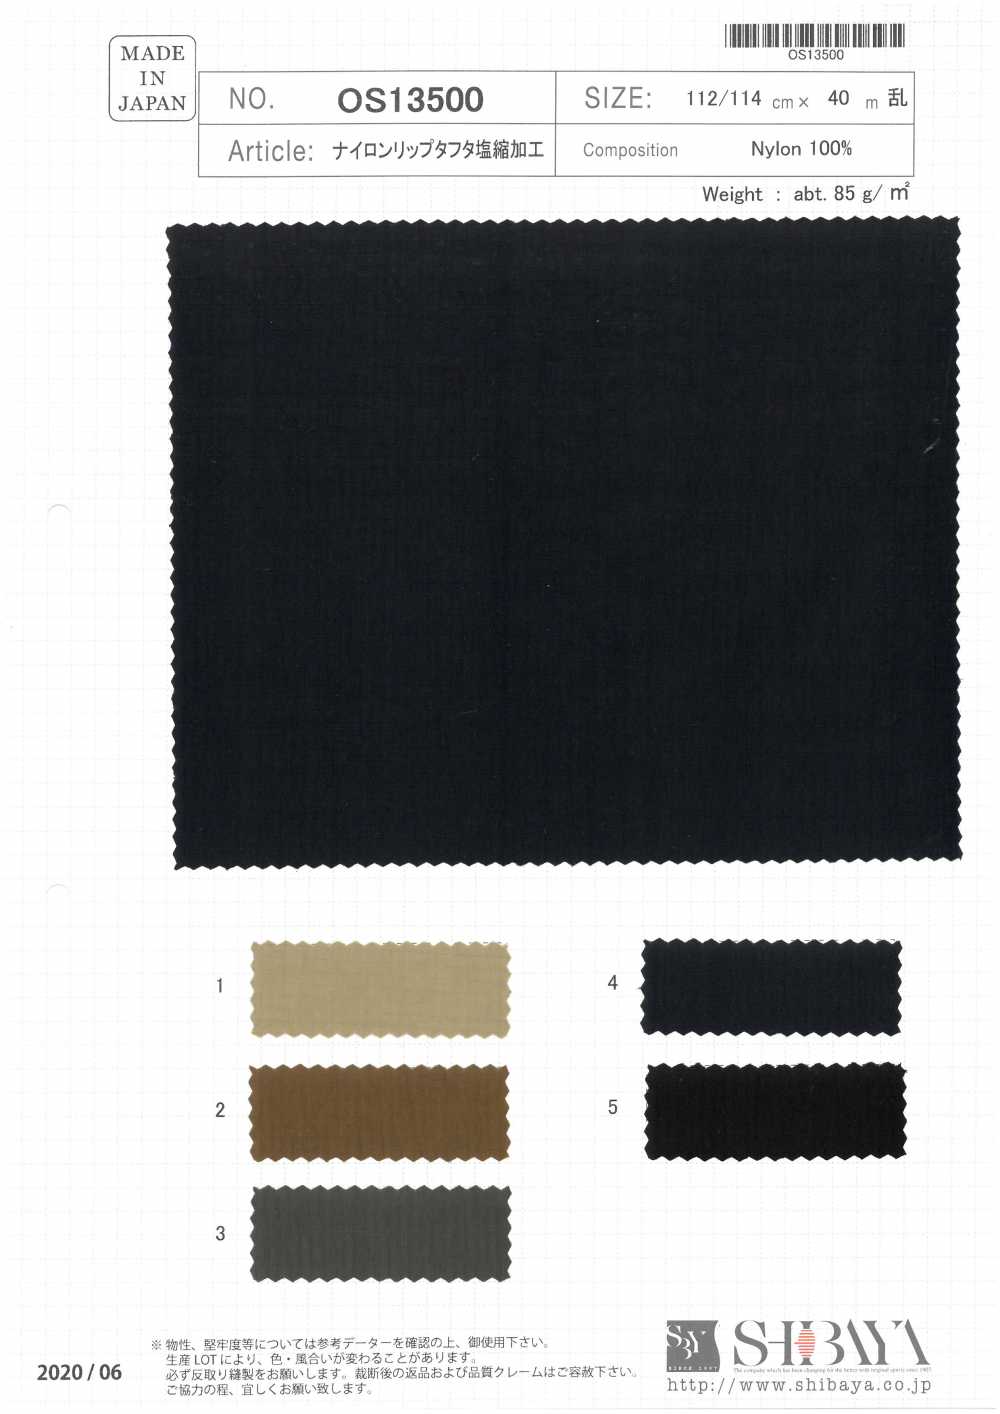 OS13500 Traitement De Rétrécissement De Sel De Taffetas De Lèvre En Nylon[Fabrication De Textile] SHIBAYA